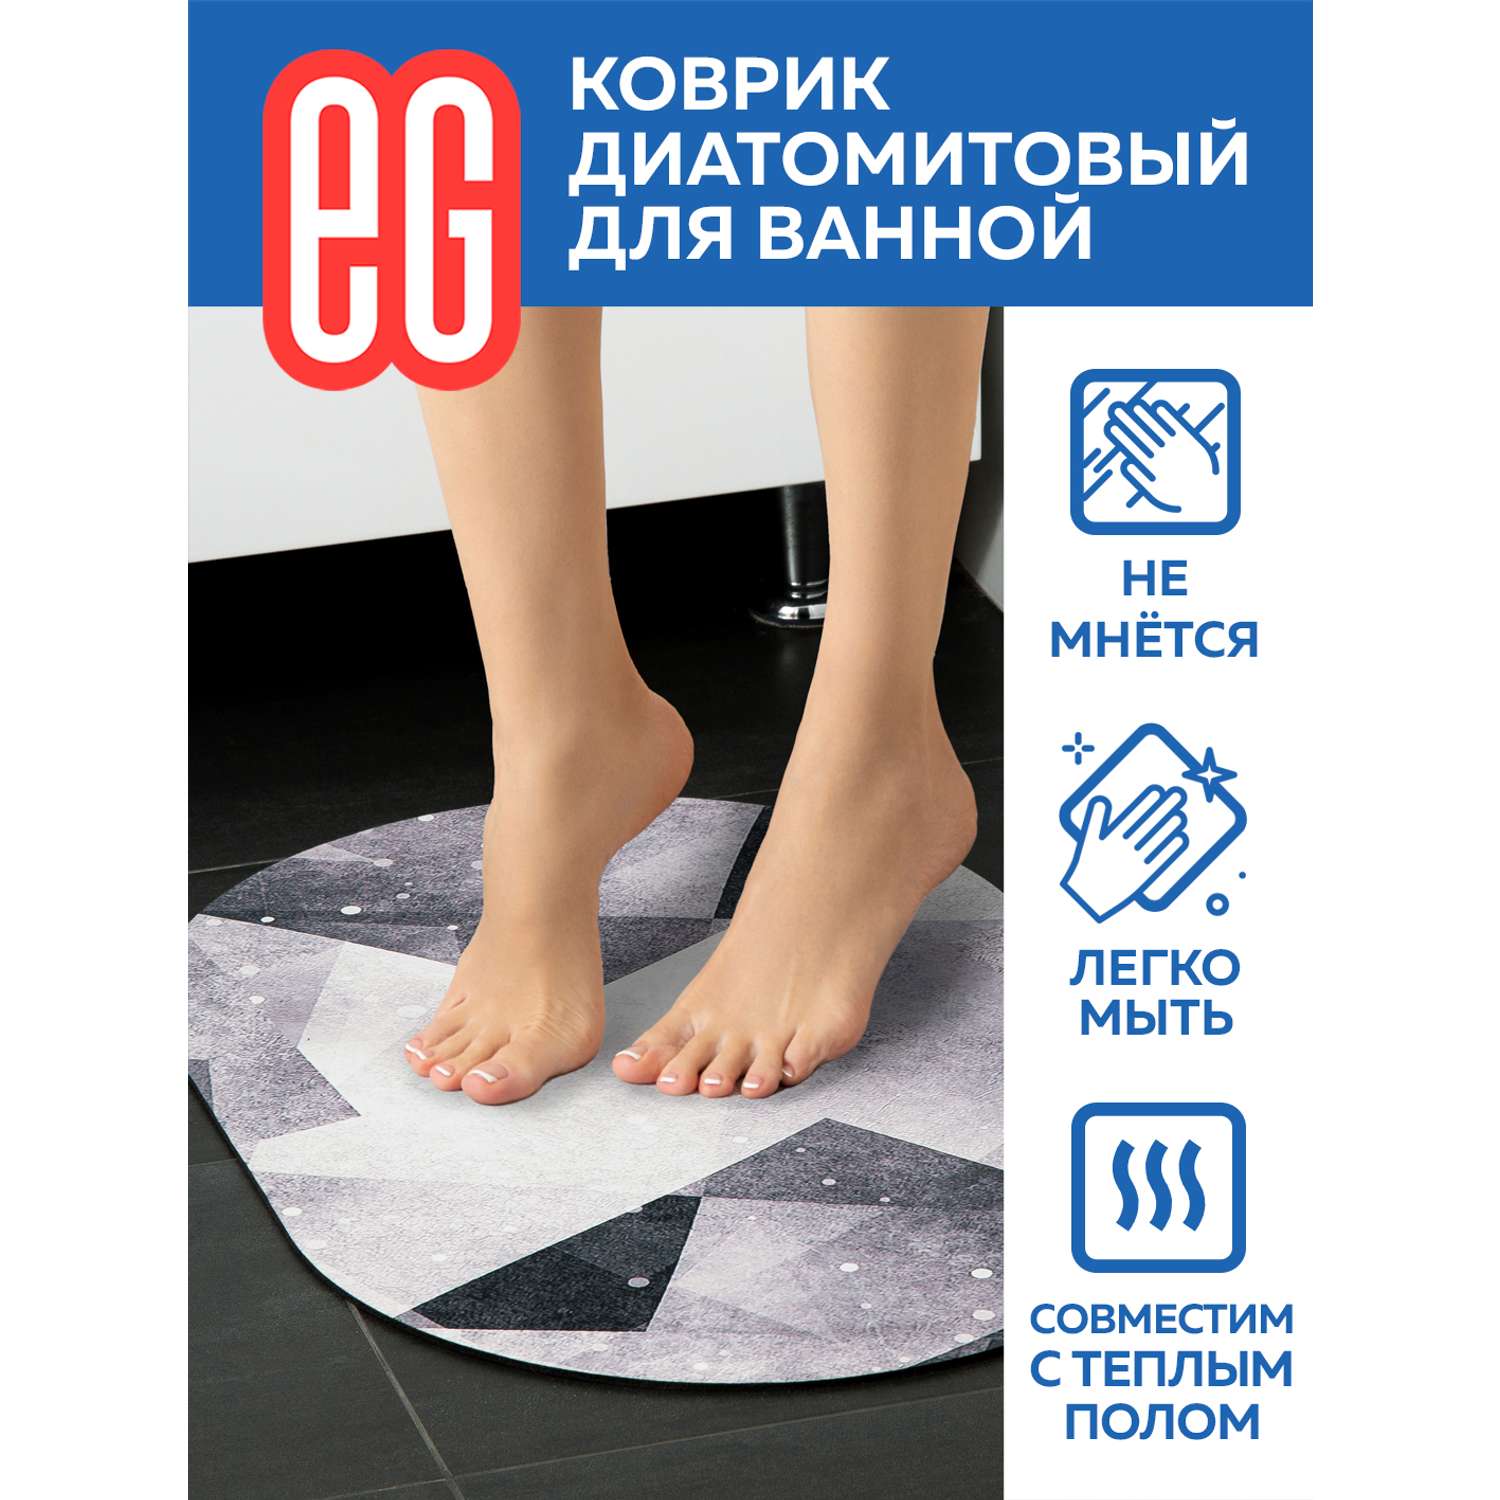 Коврик для ванной ЕВРОГАРАНТ серии Pietra Диатомитовый 40х60 см овал - фото 4